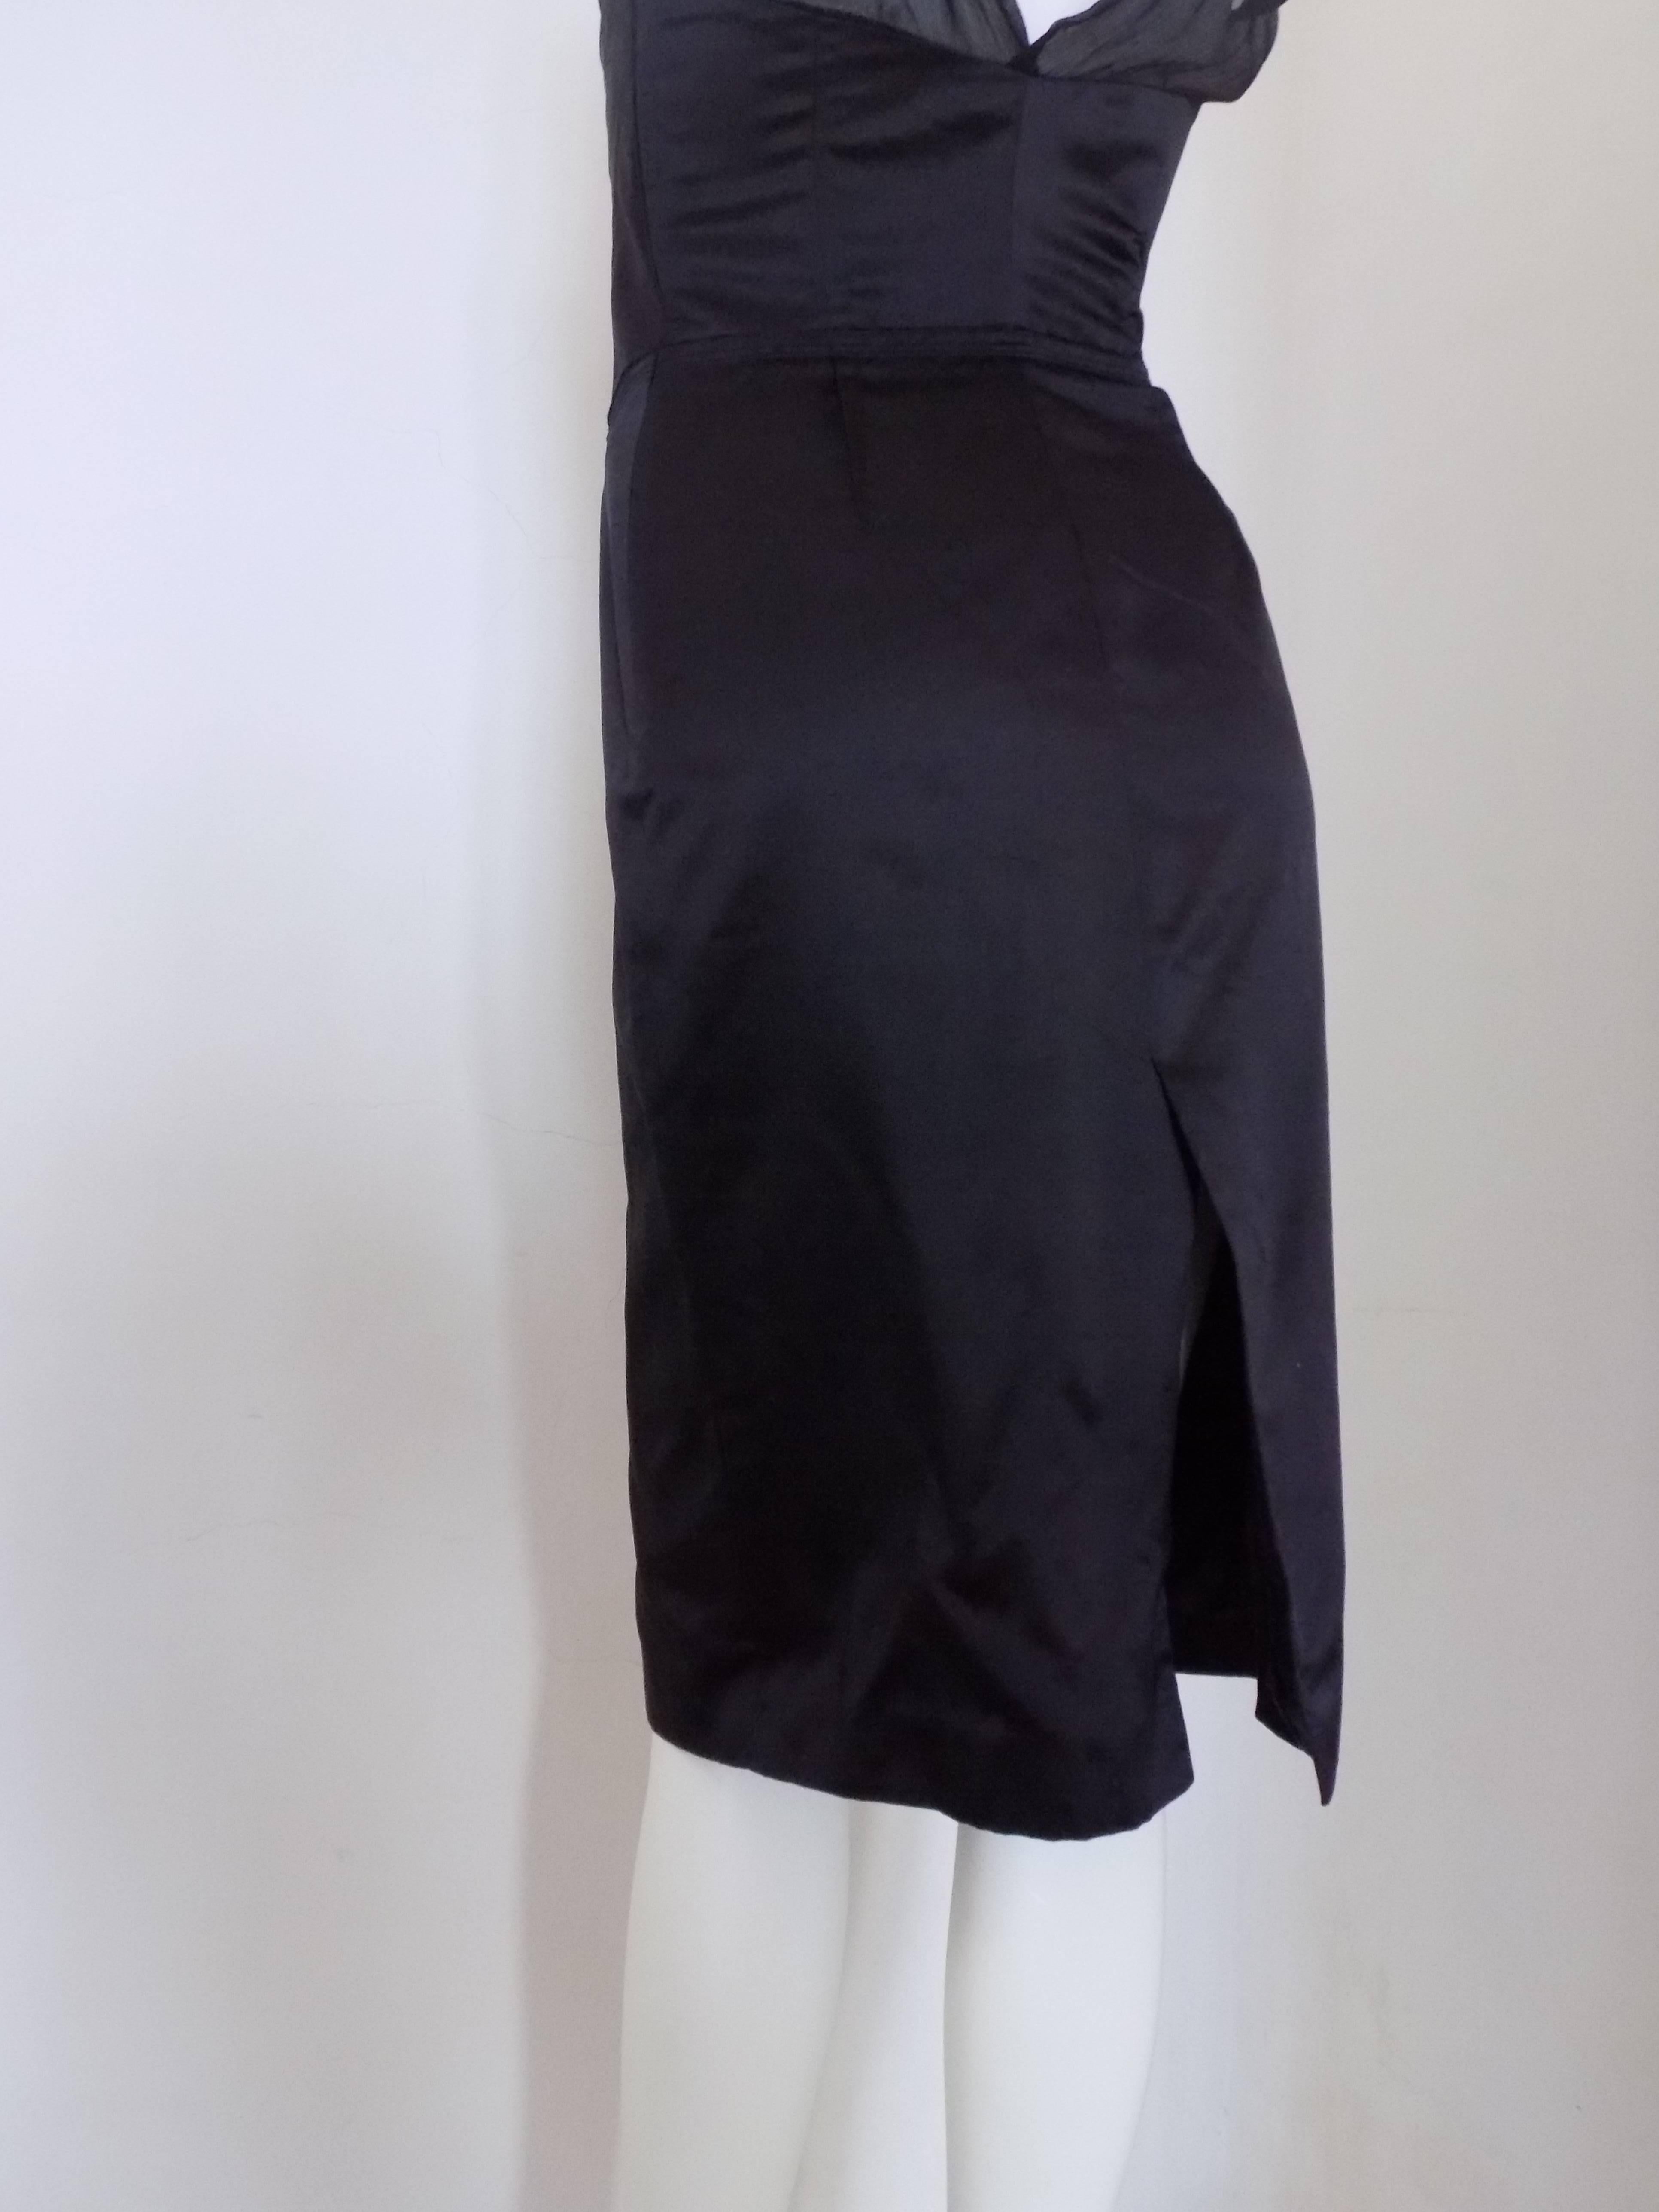 Women's or Men's Prada Black Dress NWOT